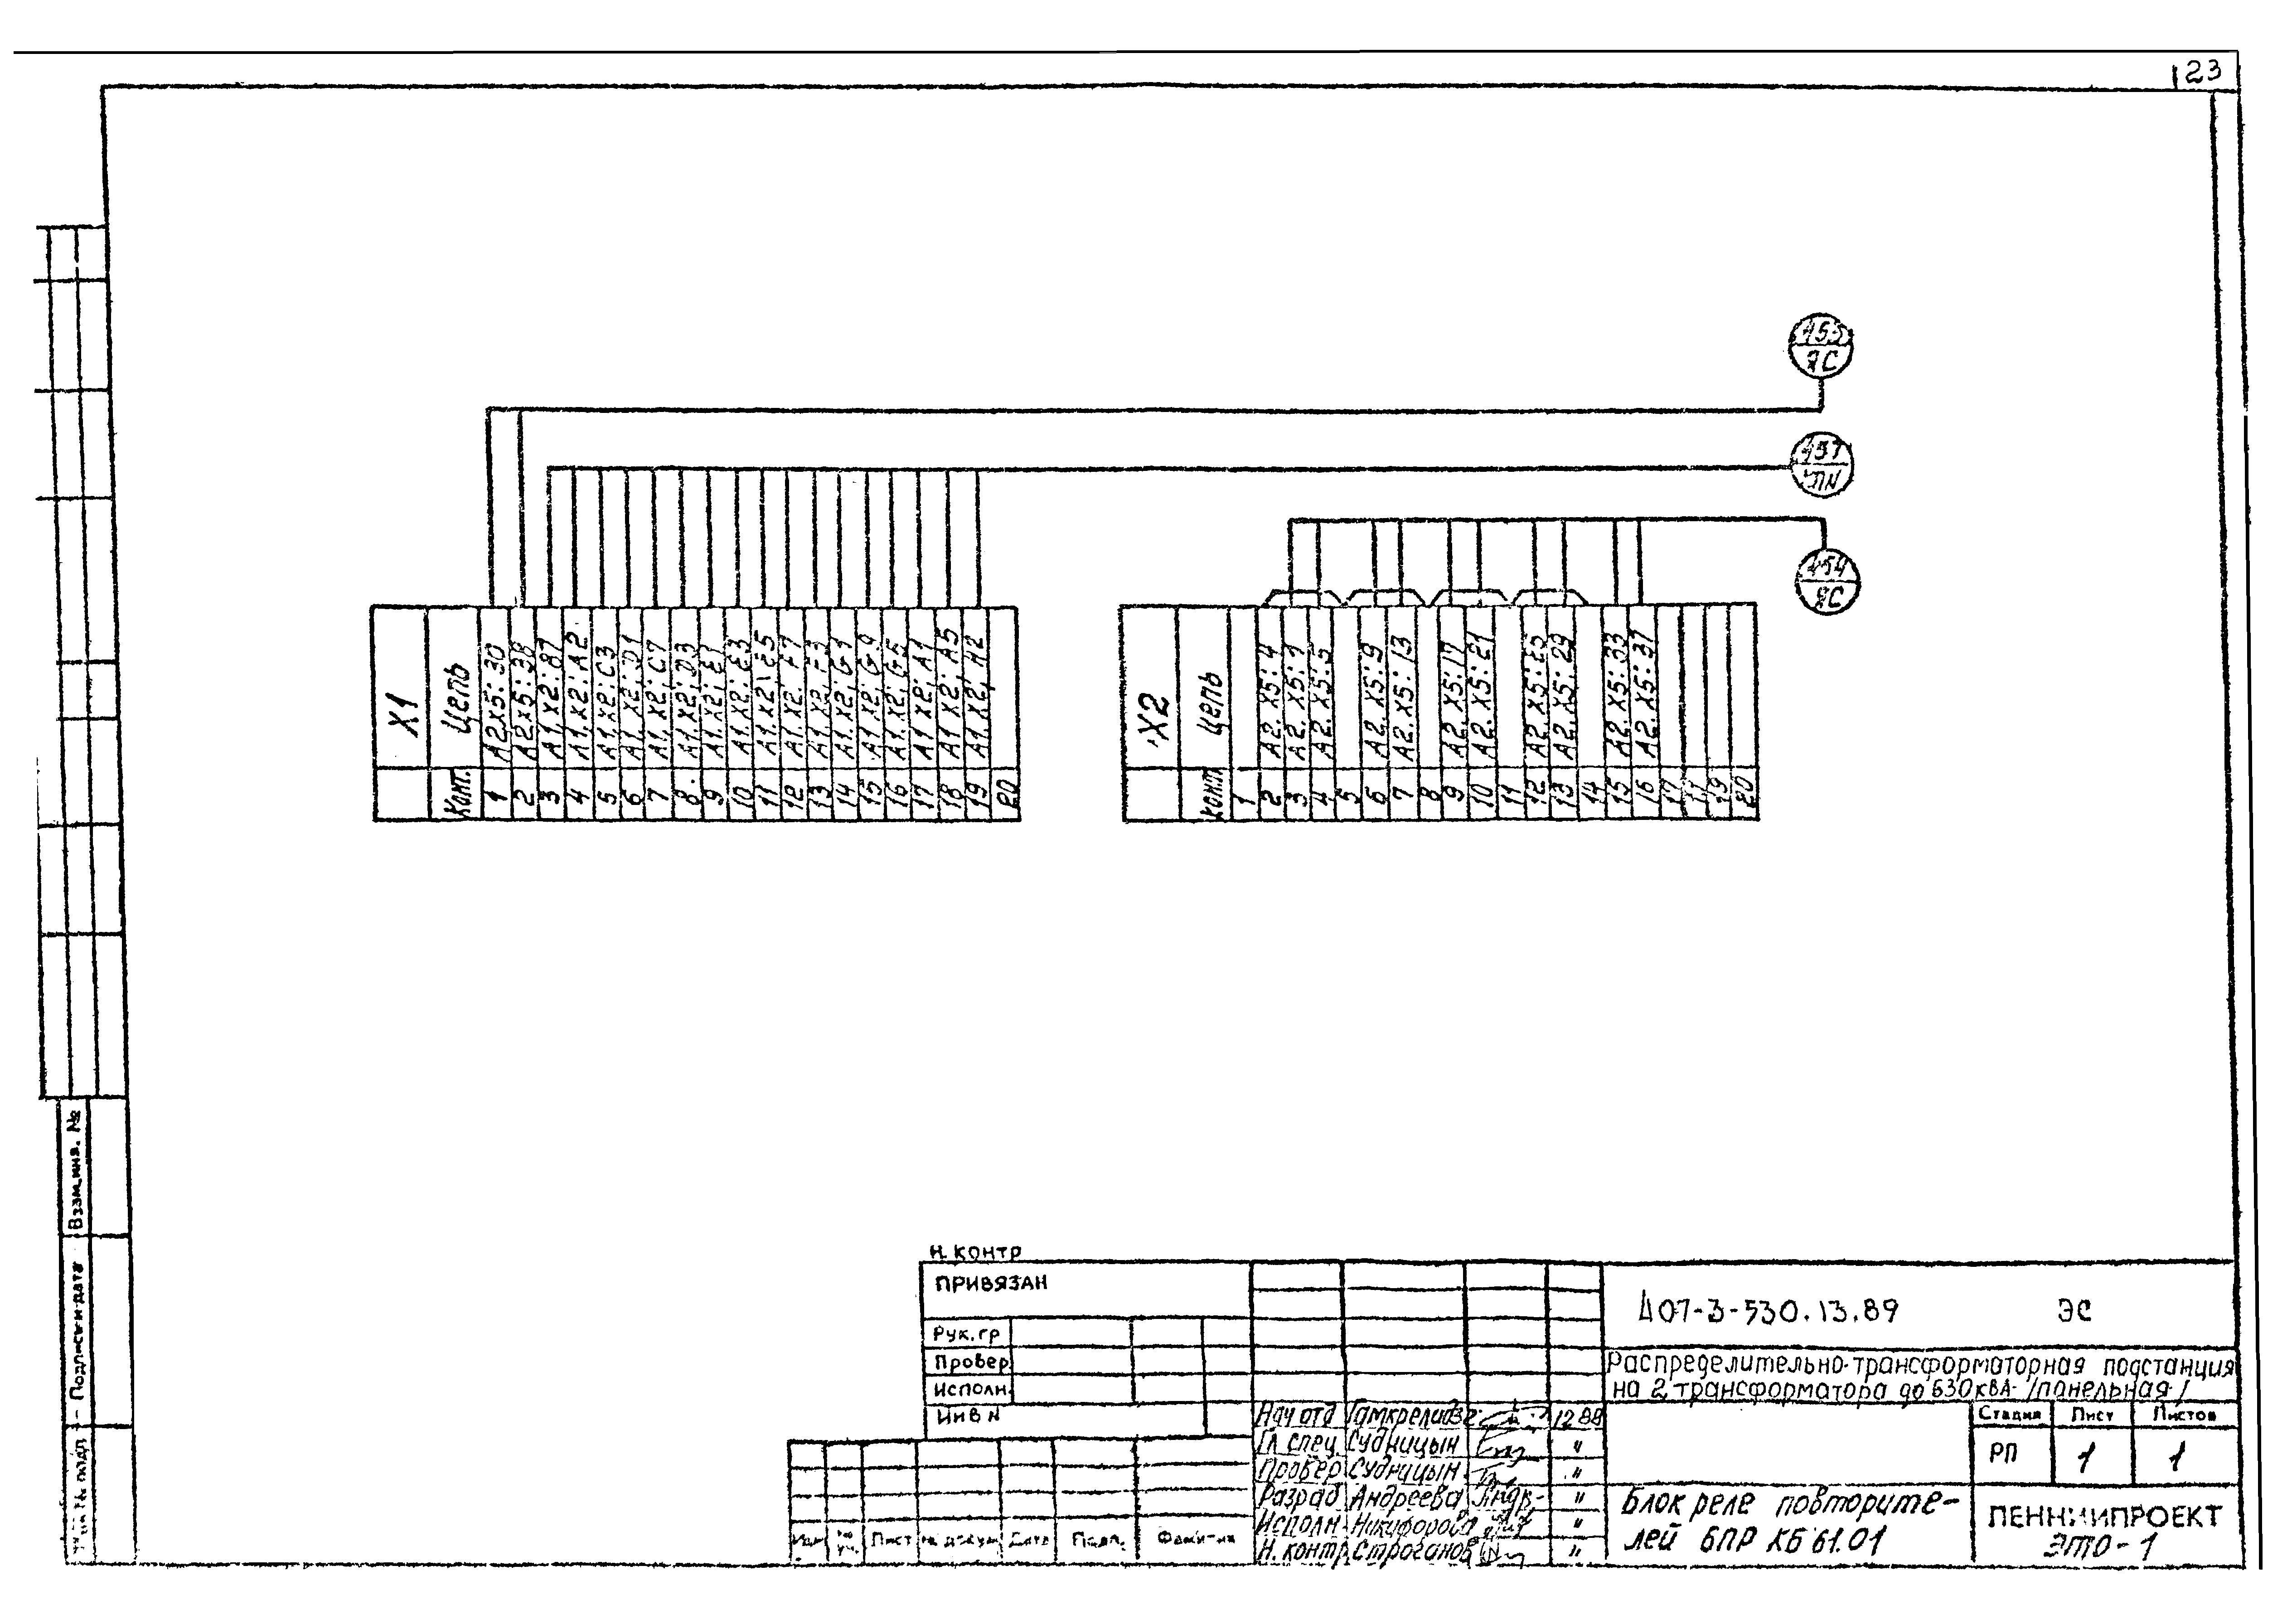 Типовой проект 407-3-530.13.89